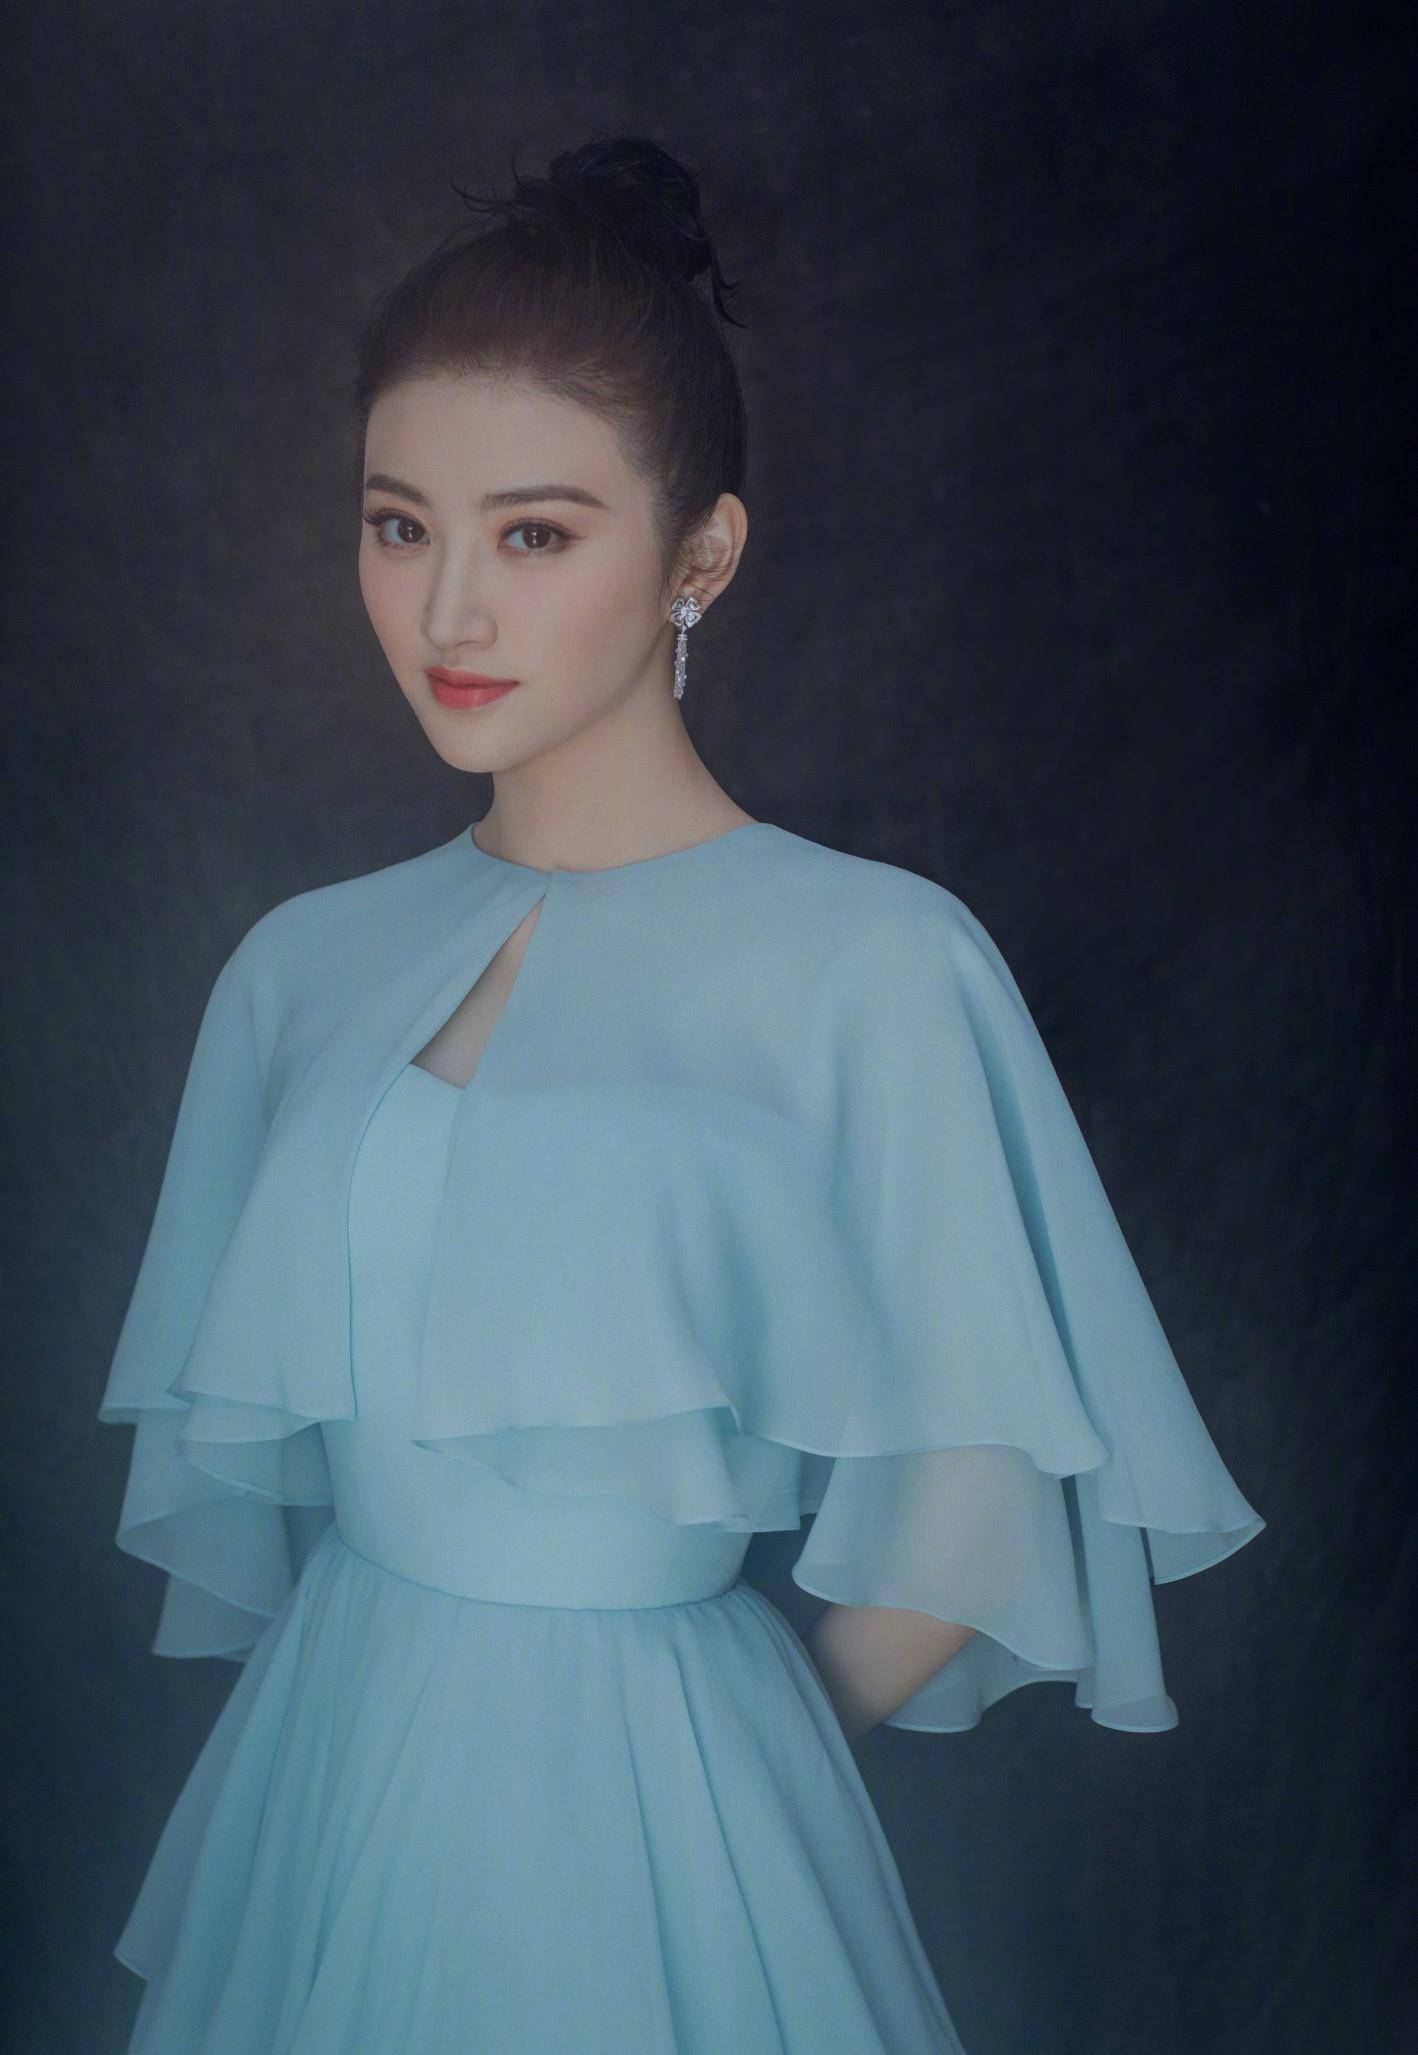 女演员景甜曾经被称为北京电影学院校花乃至中国第一校花的女星,自一